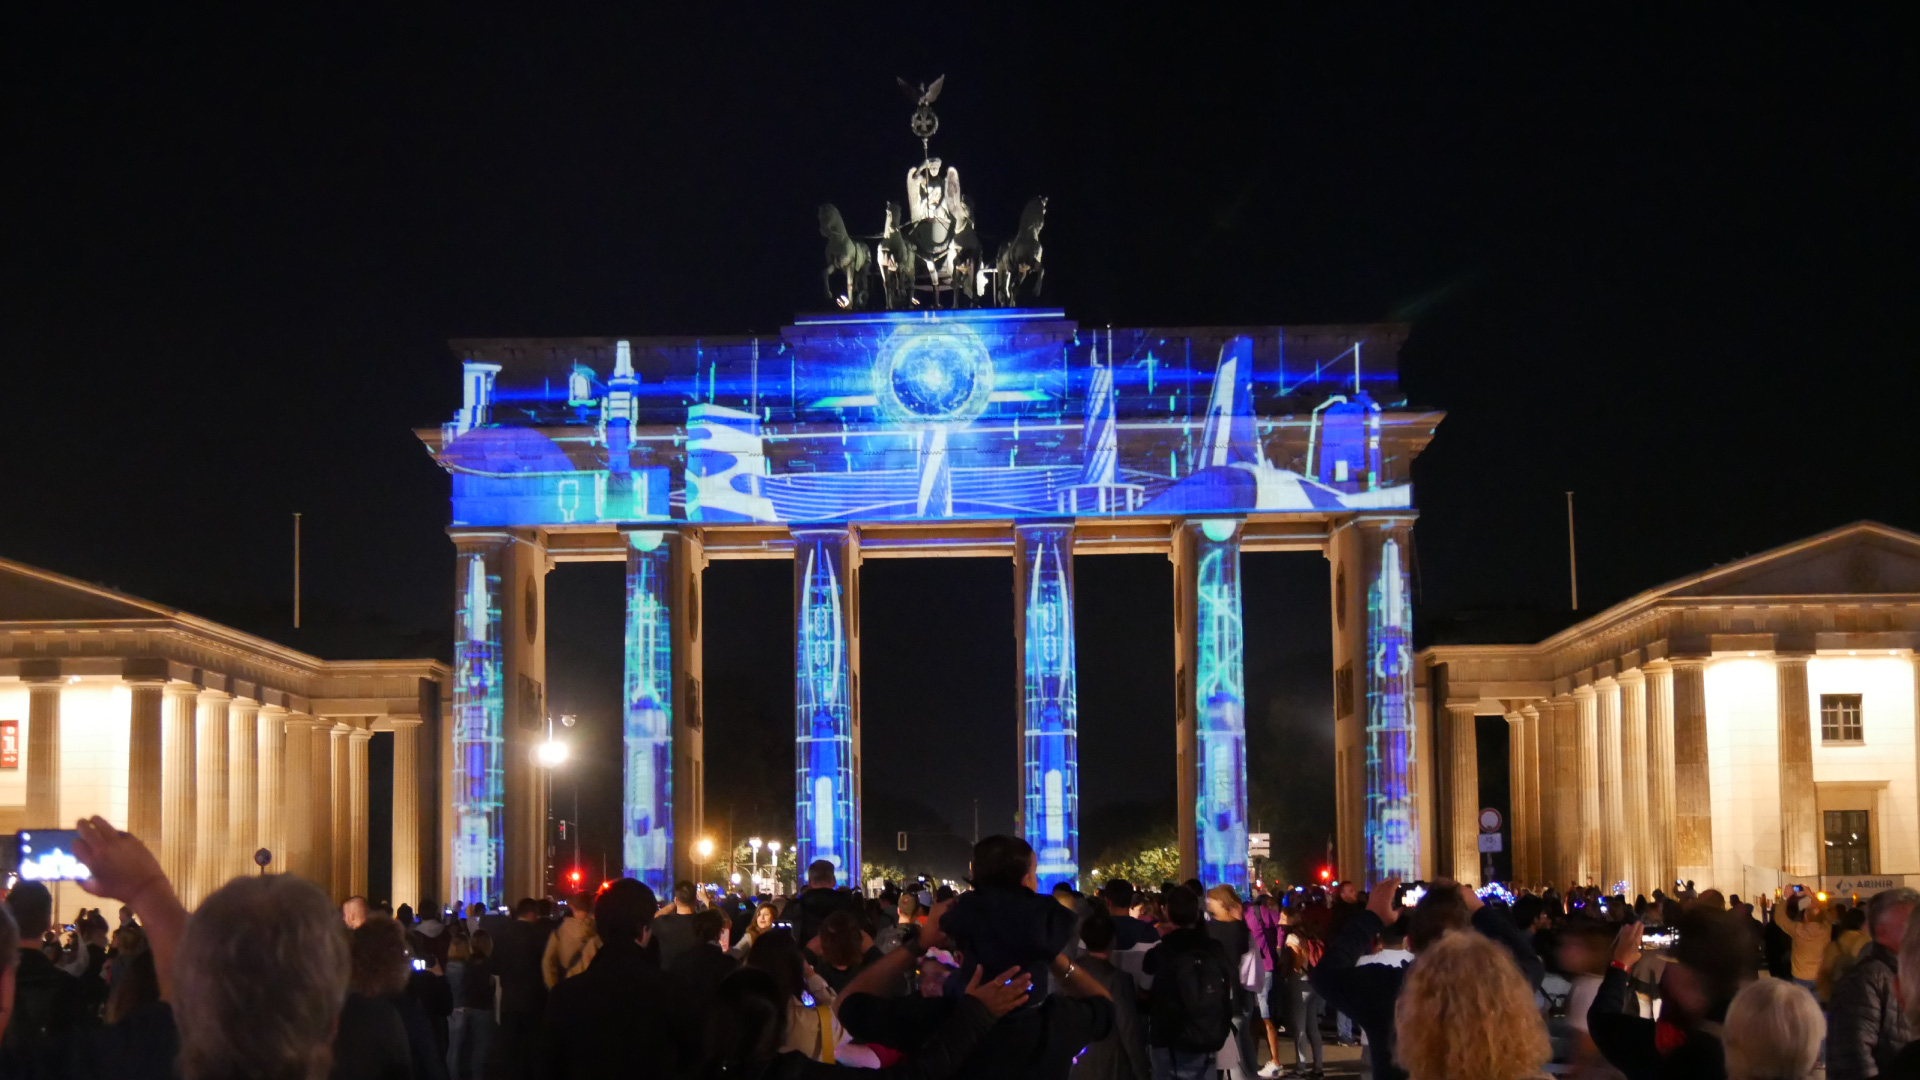 PRG suministró más de 20 proyectores para la realización de estas iluminaciones en el Festival de las Luces de Berlín en diversos lugares.